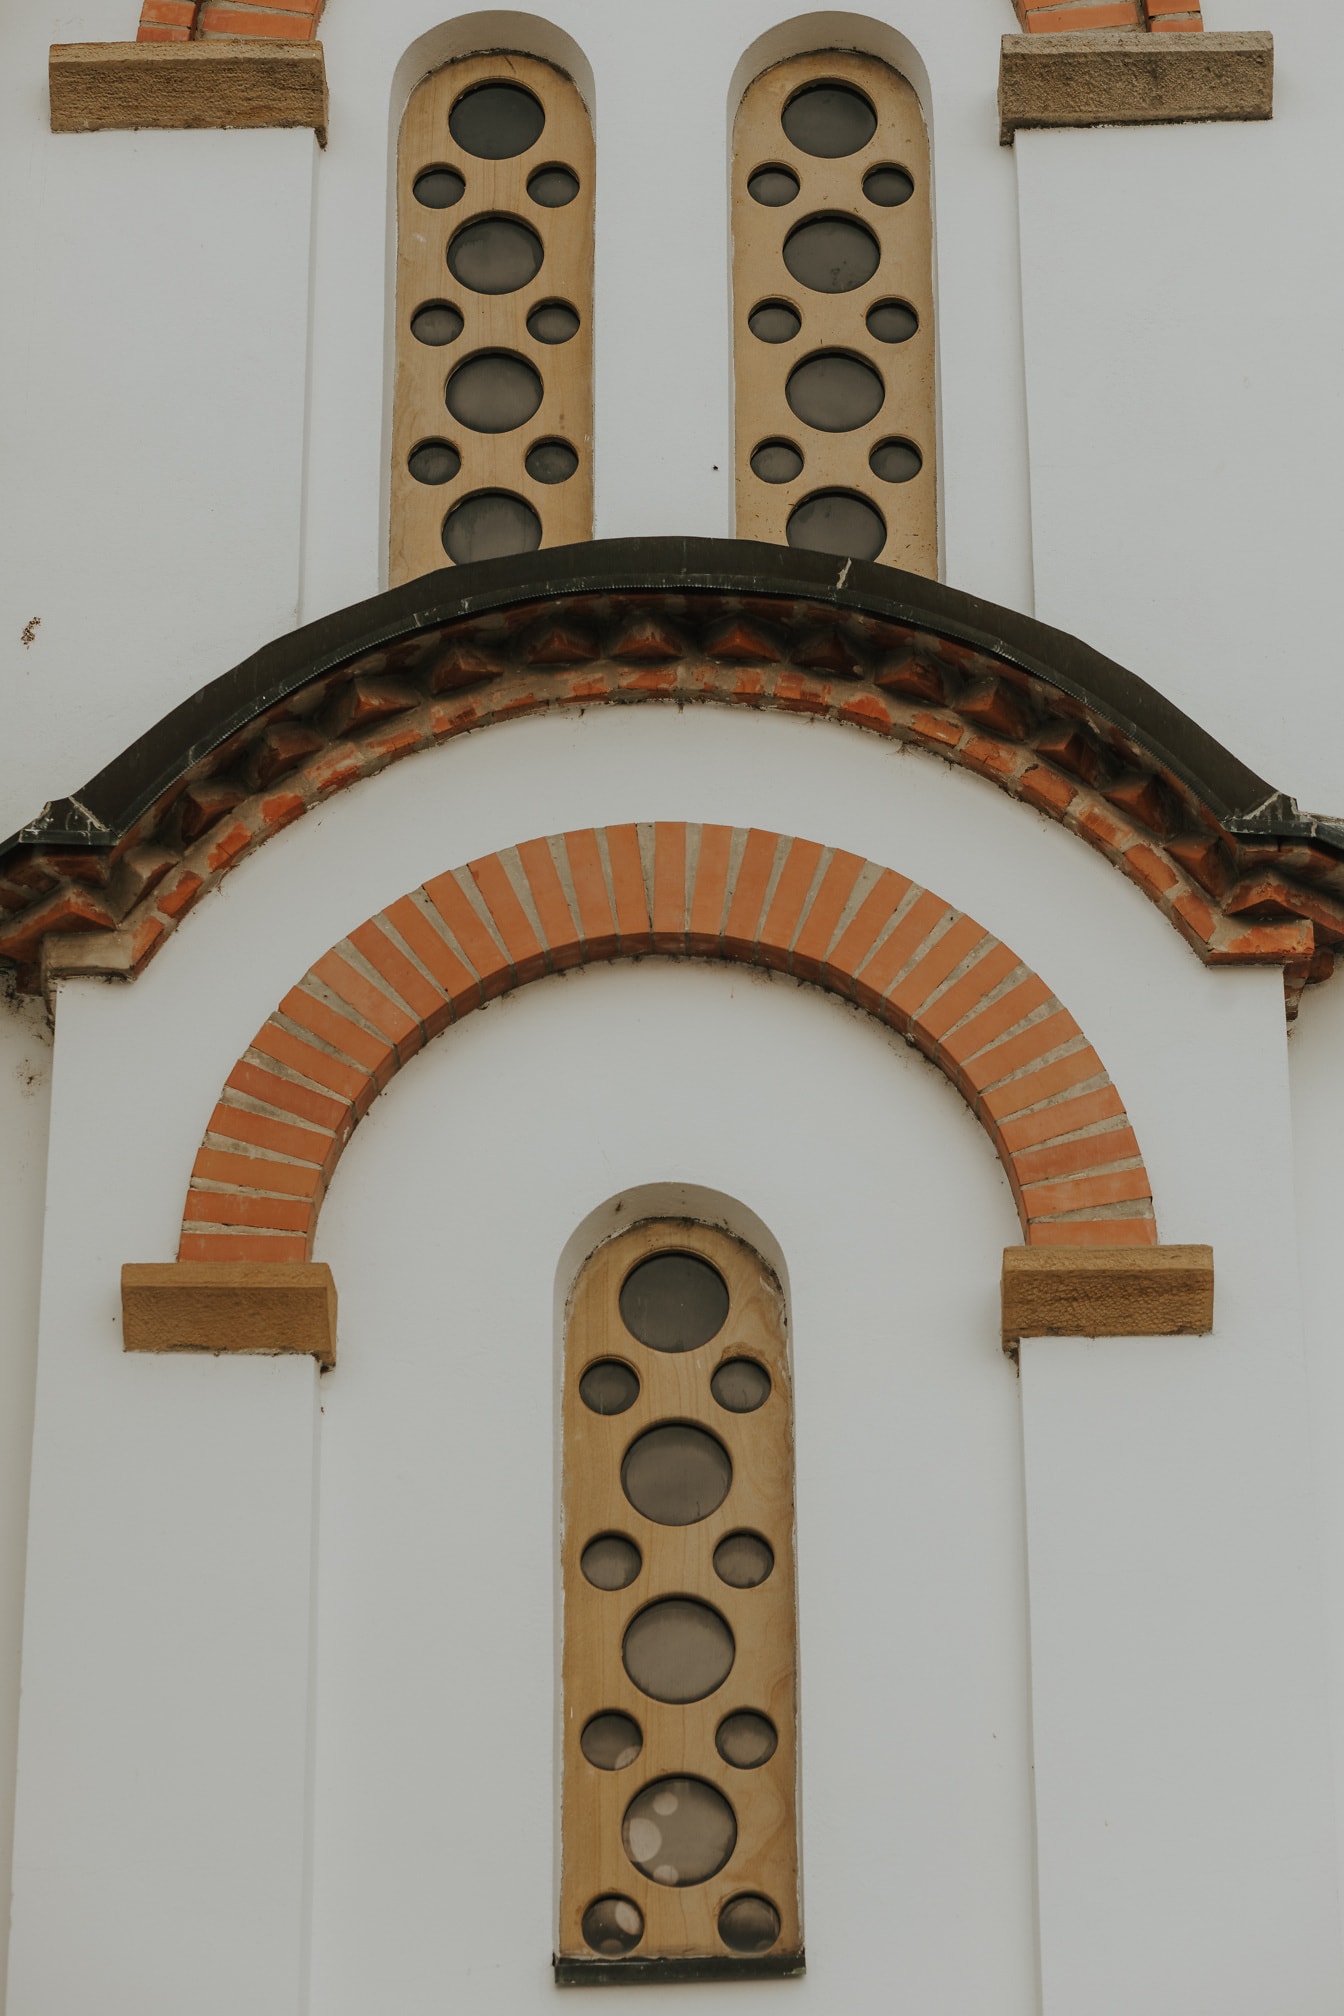 Jendela sempit dalam gaya arsitektur Bizantium ortodoks abad pertengahan